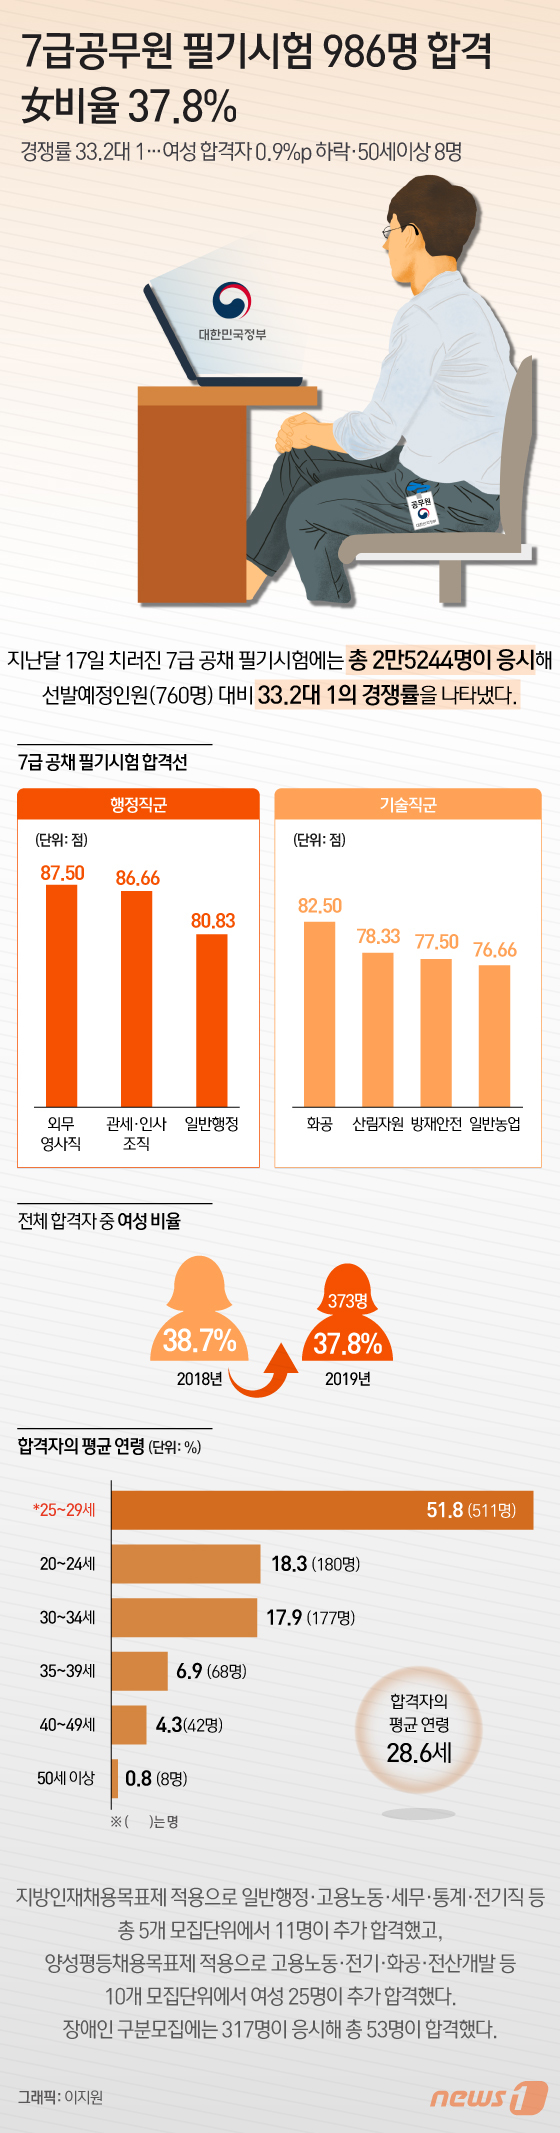 [그래픽뉴스] 7급공무원 필기시험 986명 합격…女비율 37.8%